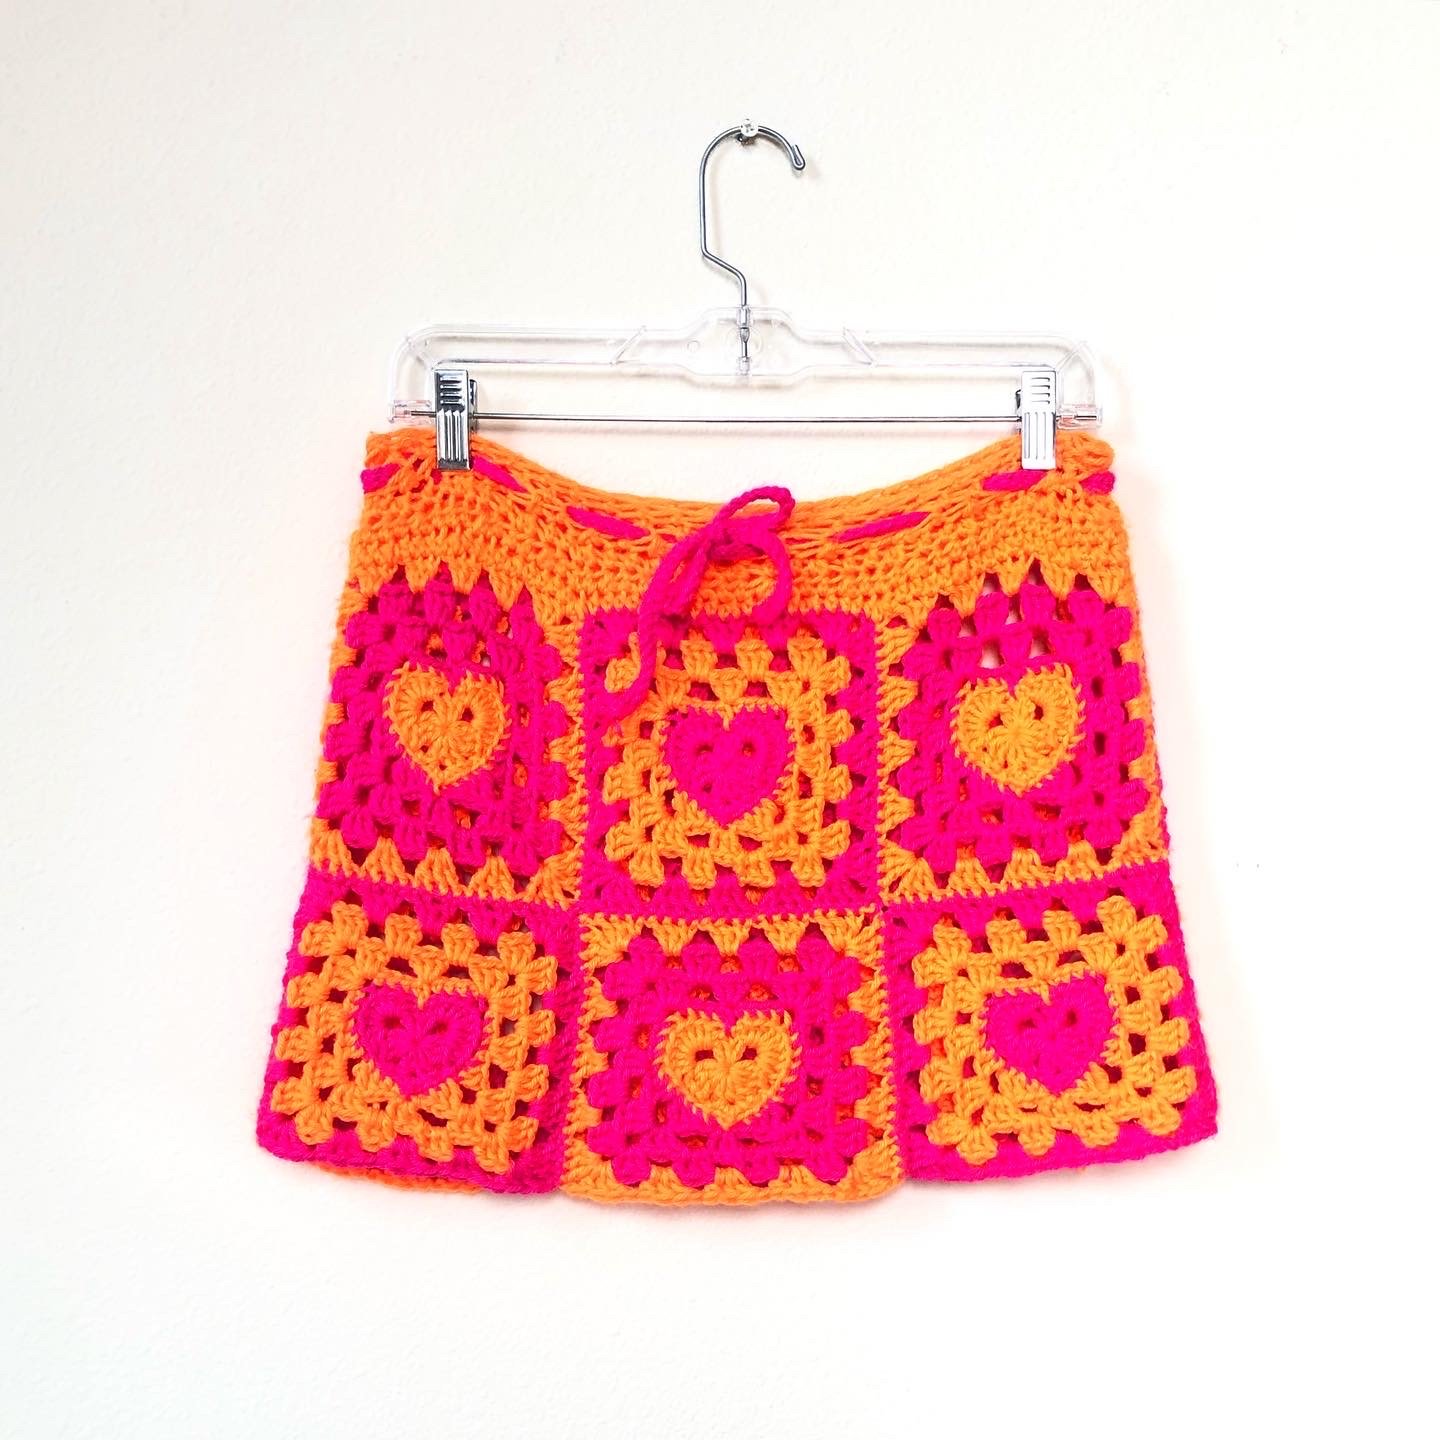 Granny Skirt